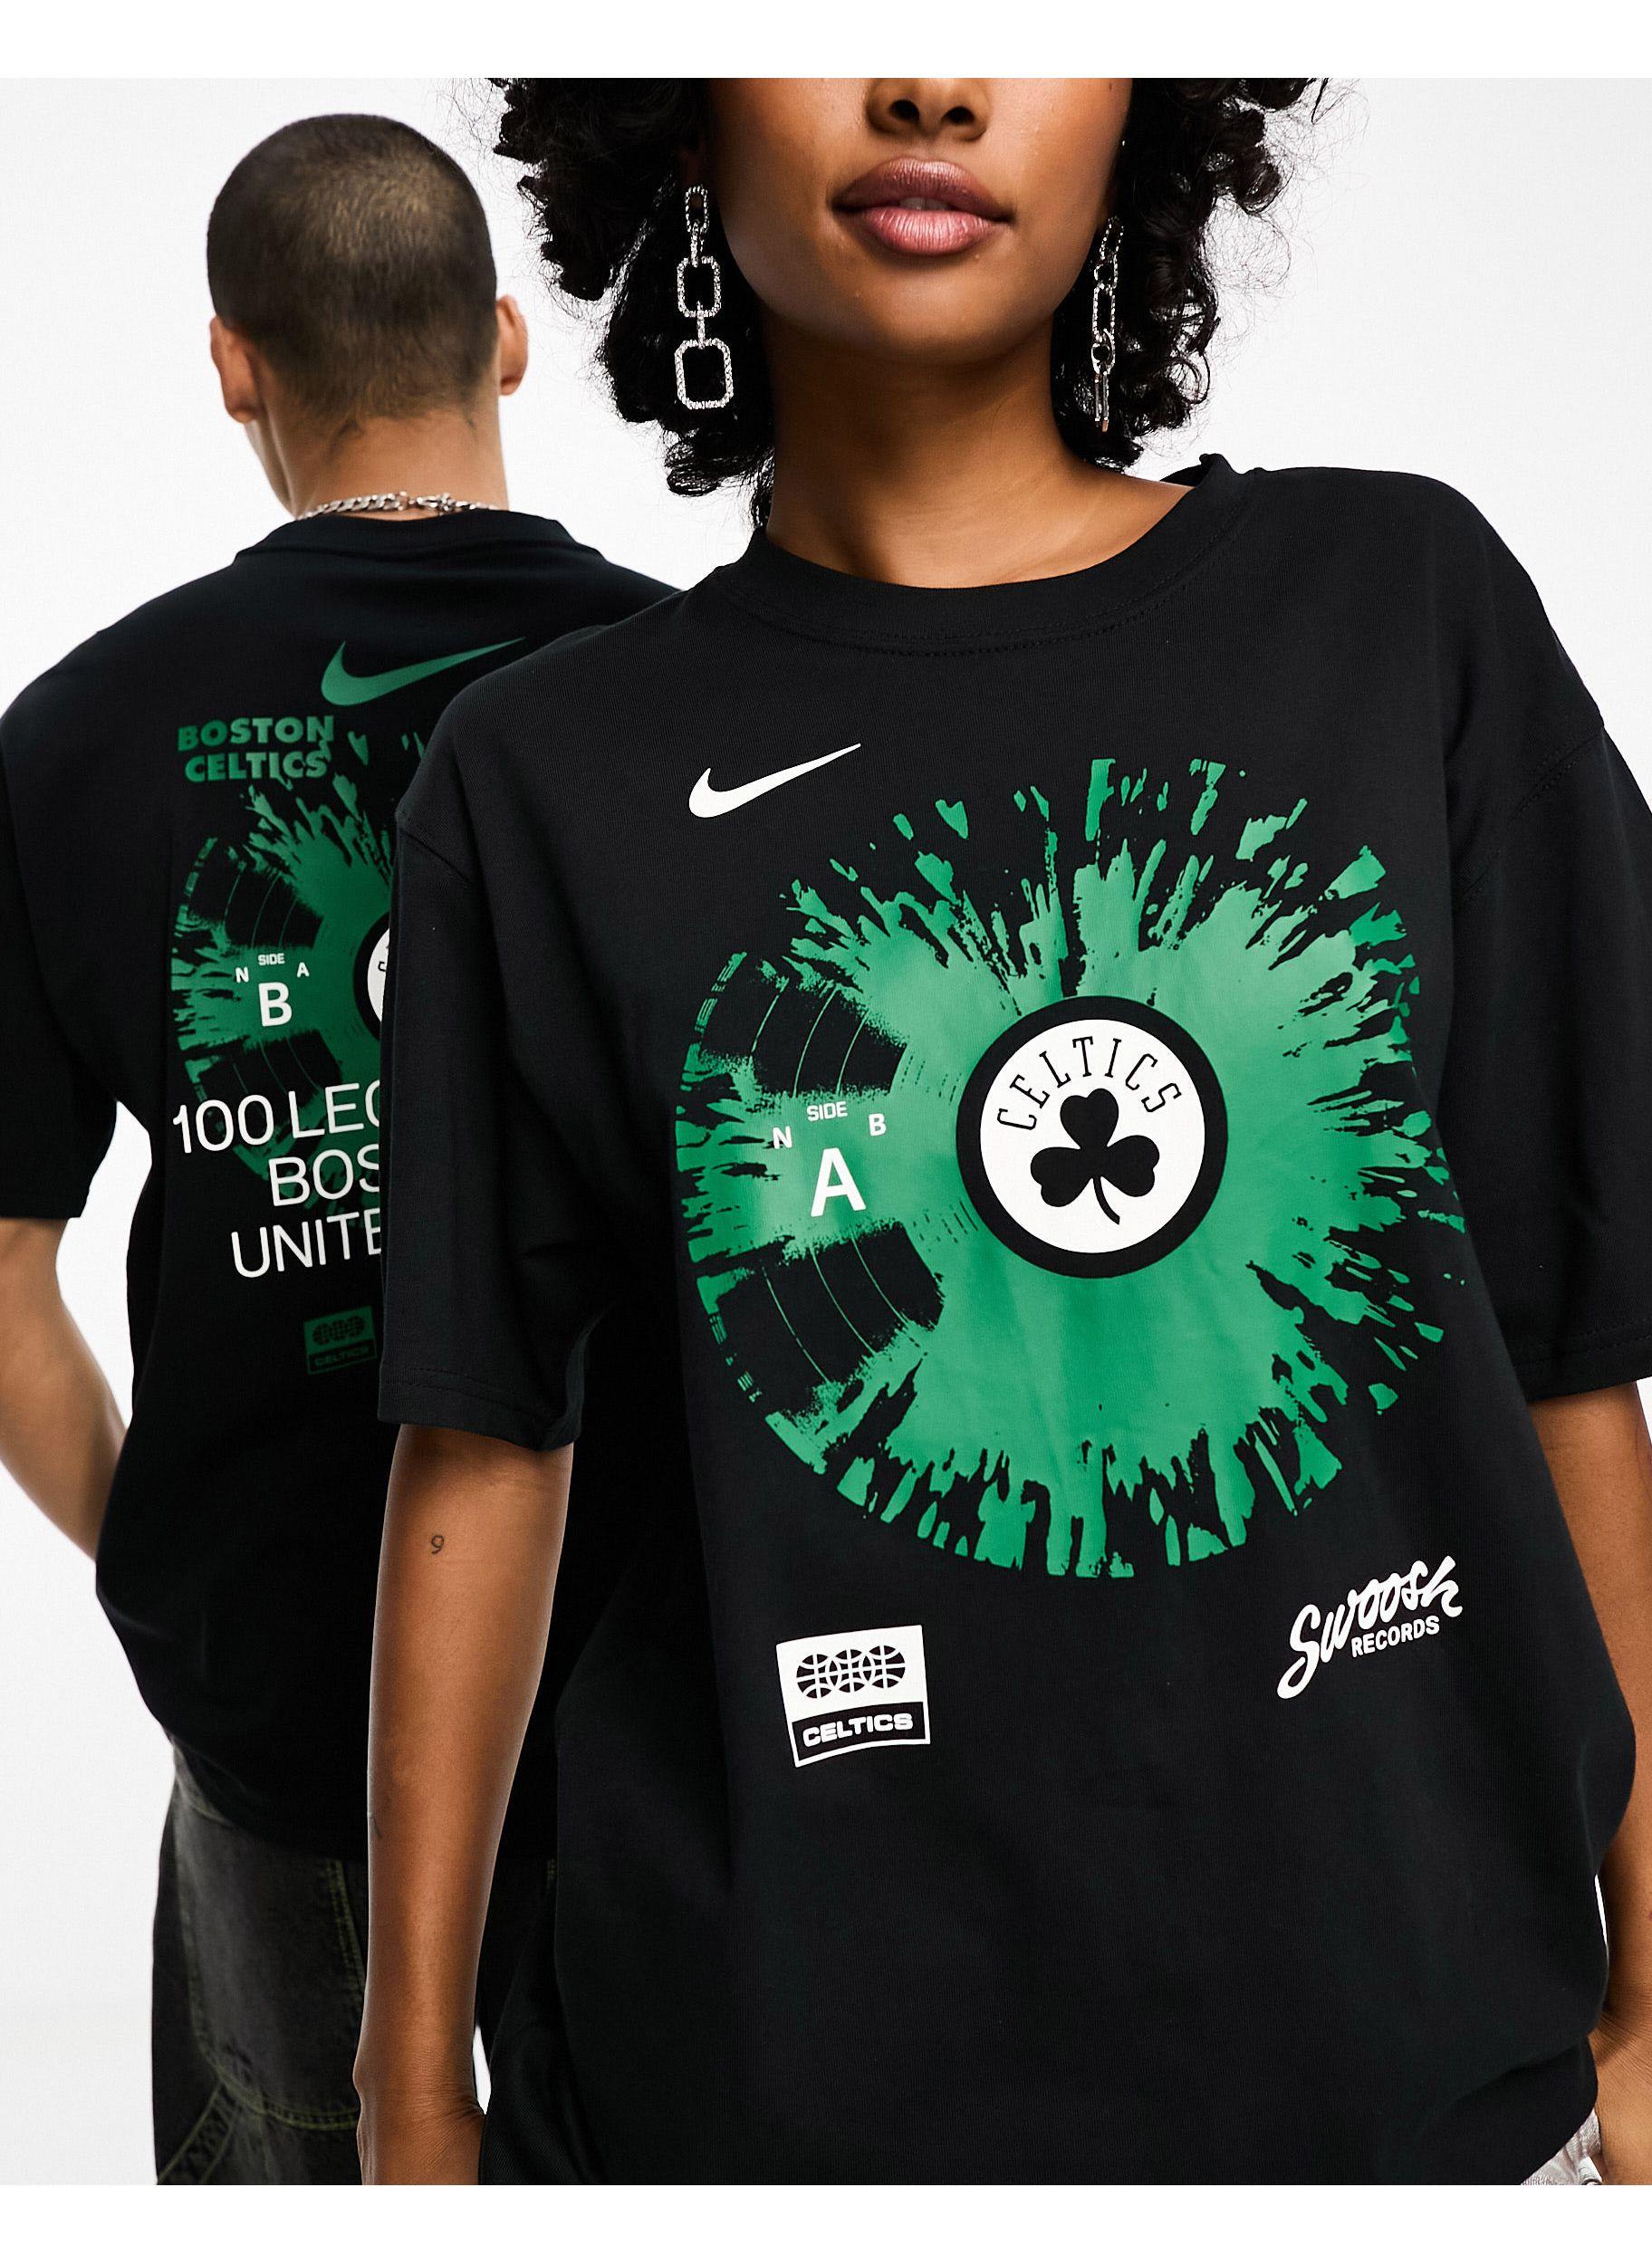 Nike Boston Celtics Men's Nike NBA Long-Sleeve T-Shirt. Nike.com